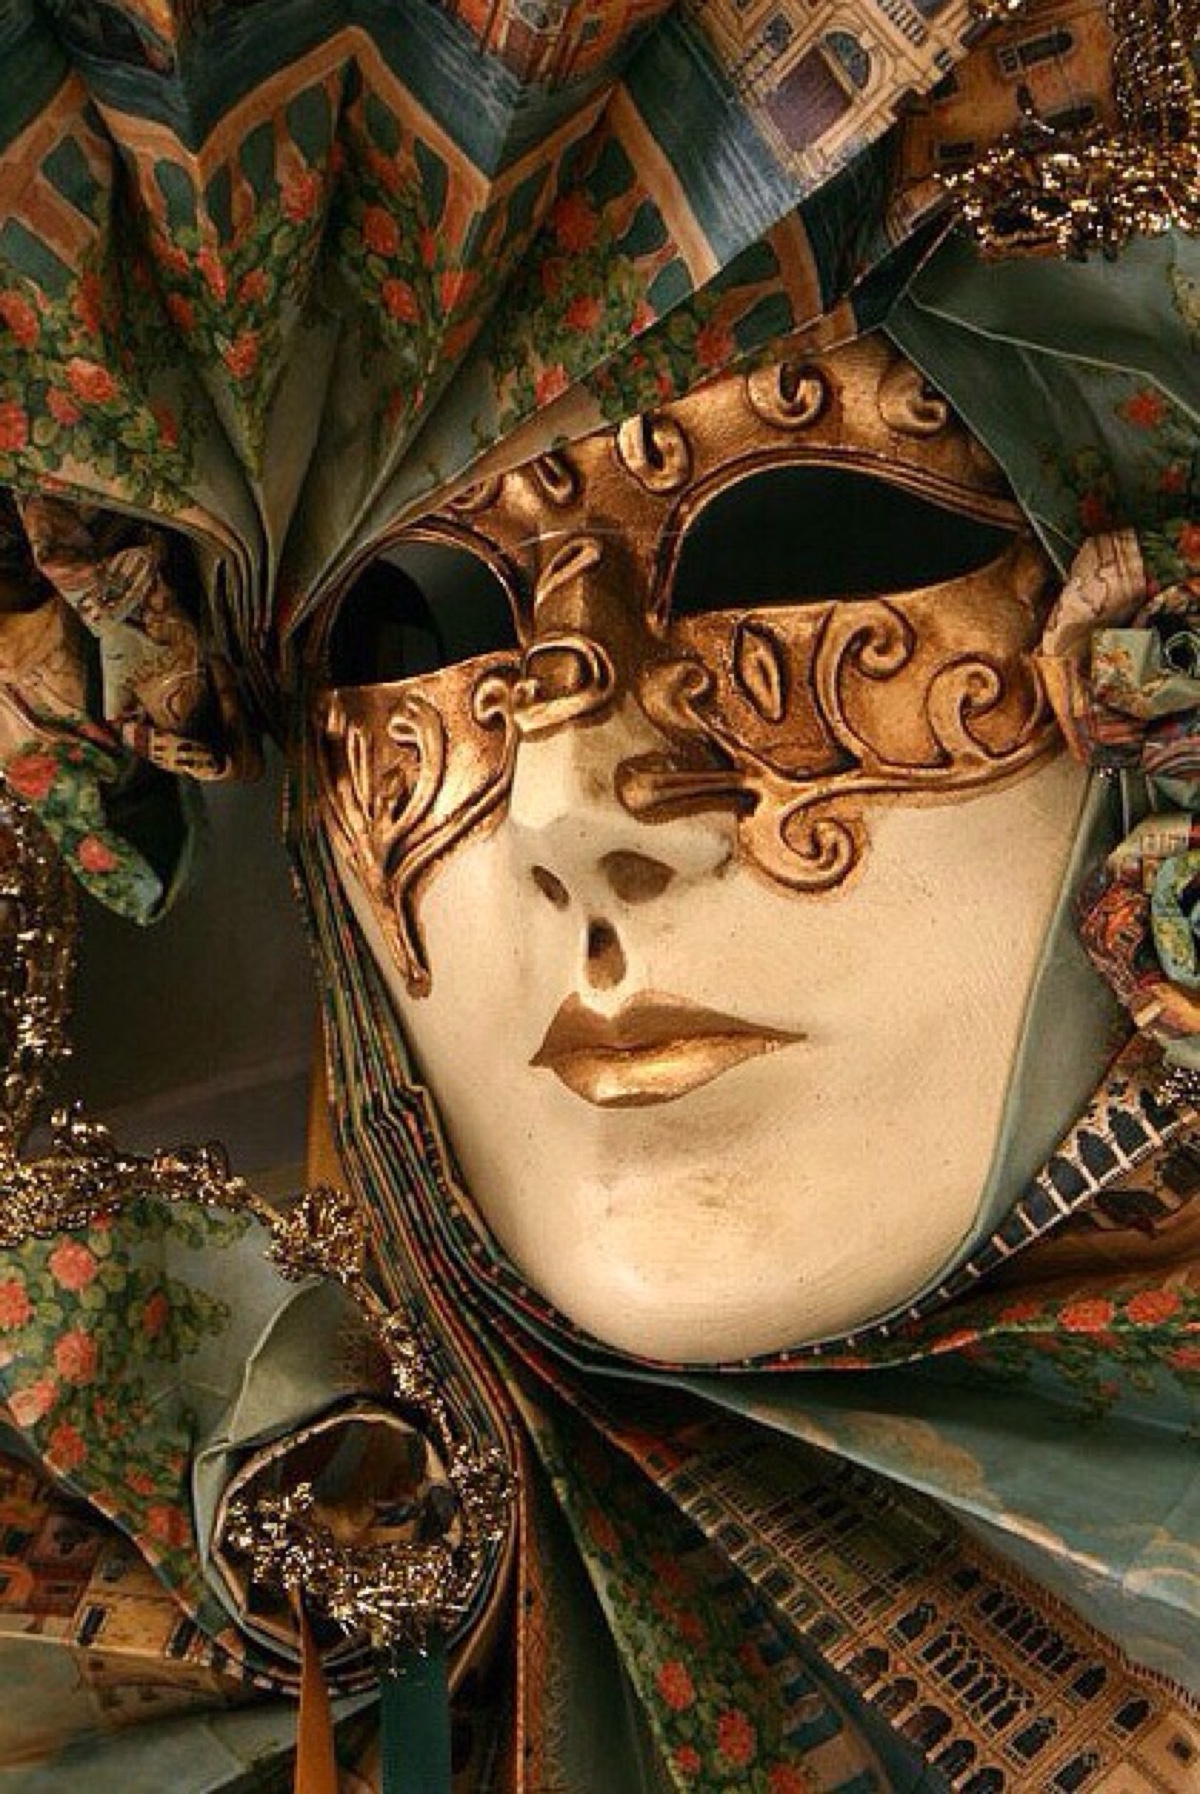 【威尼斯面具】生活中,每个人都有属于自己的一个面具,你会给自己带上